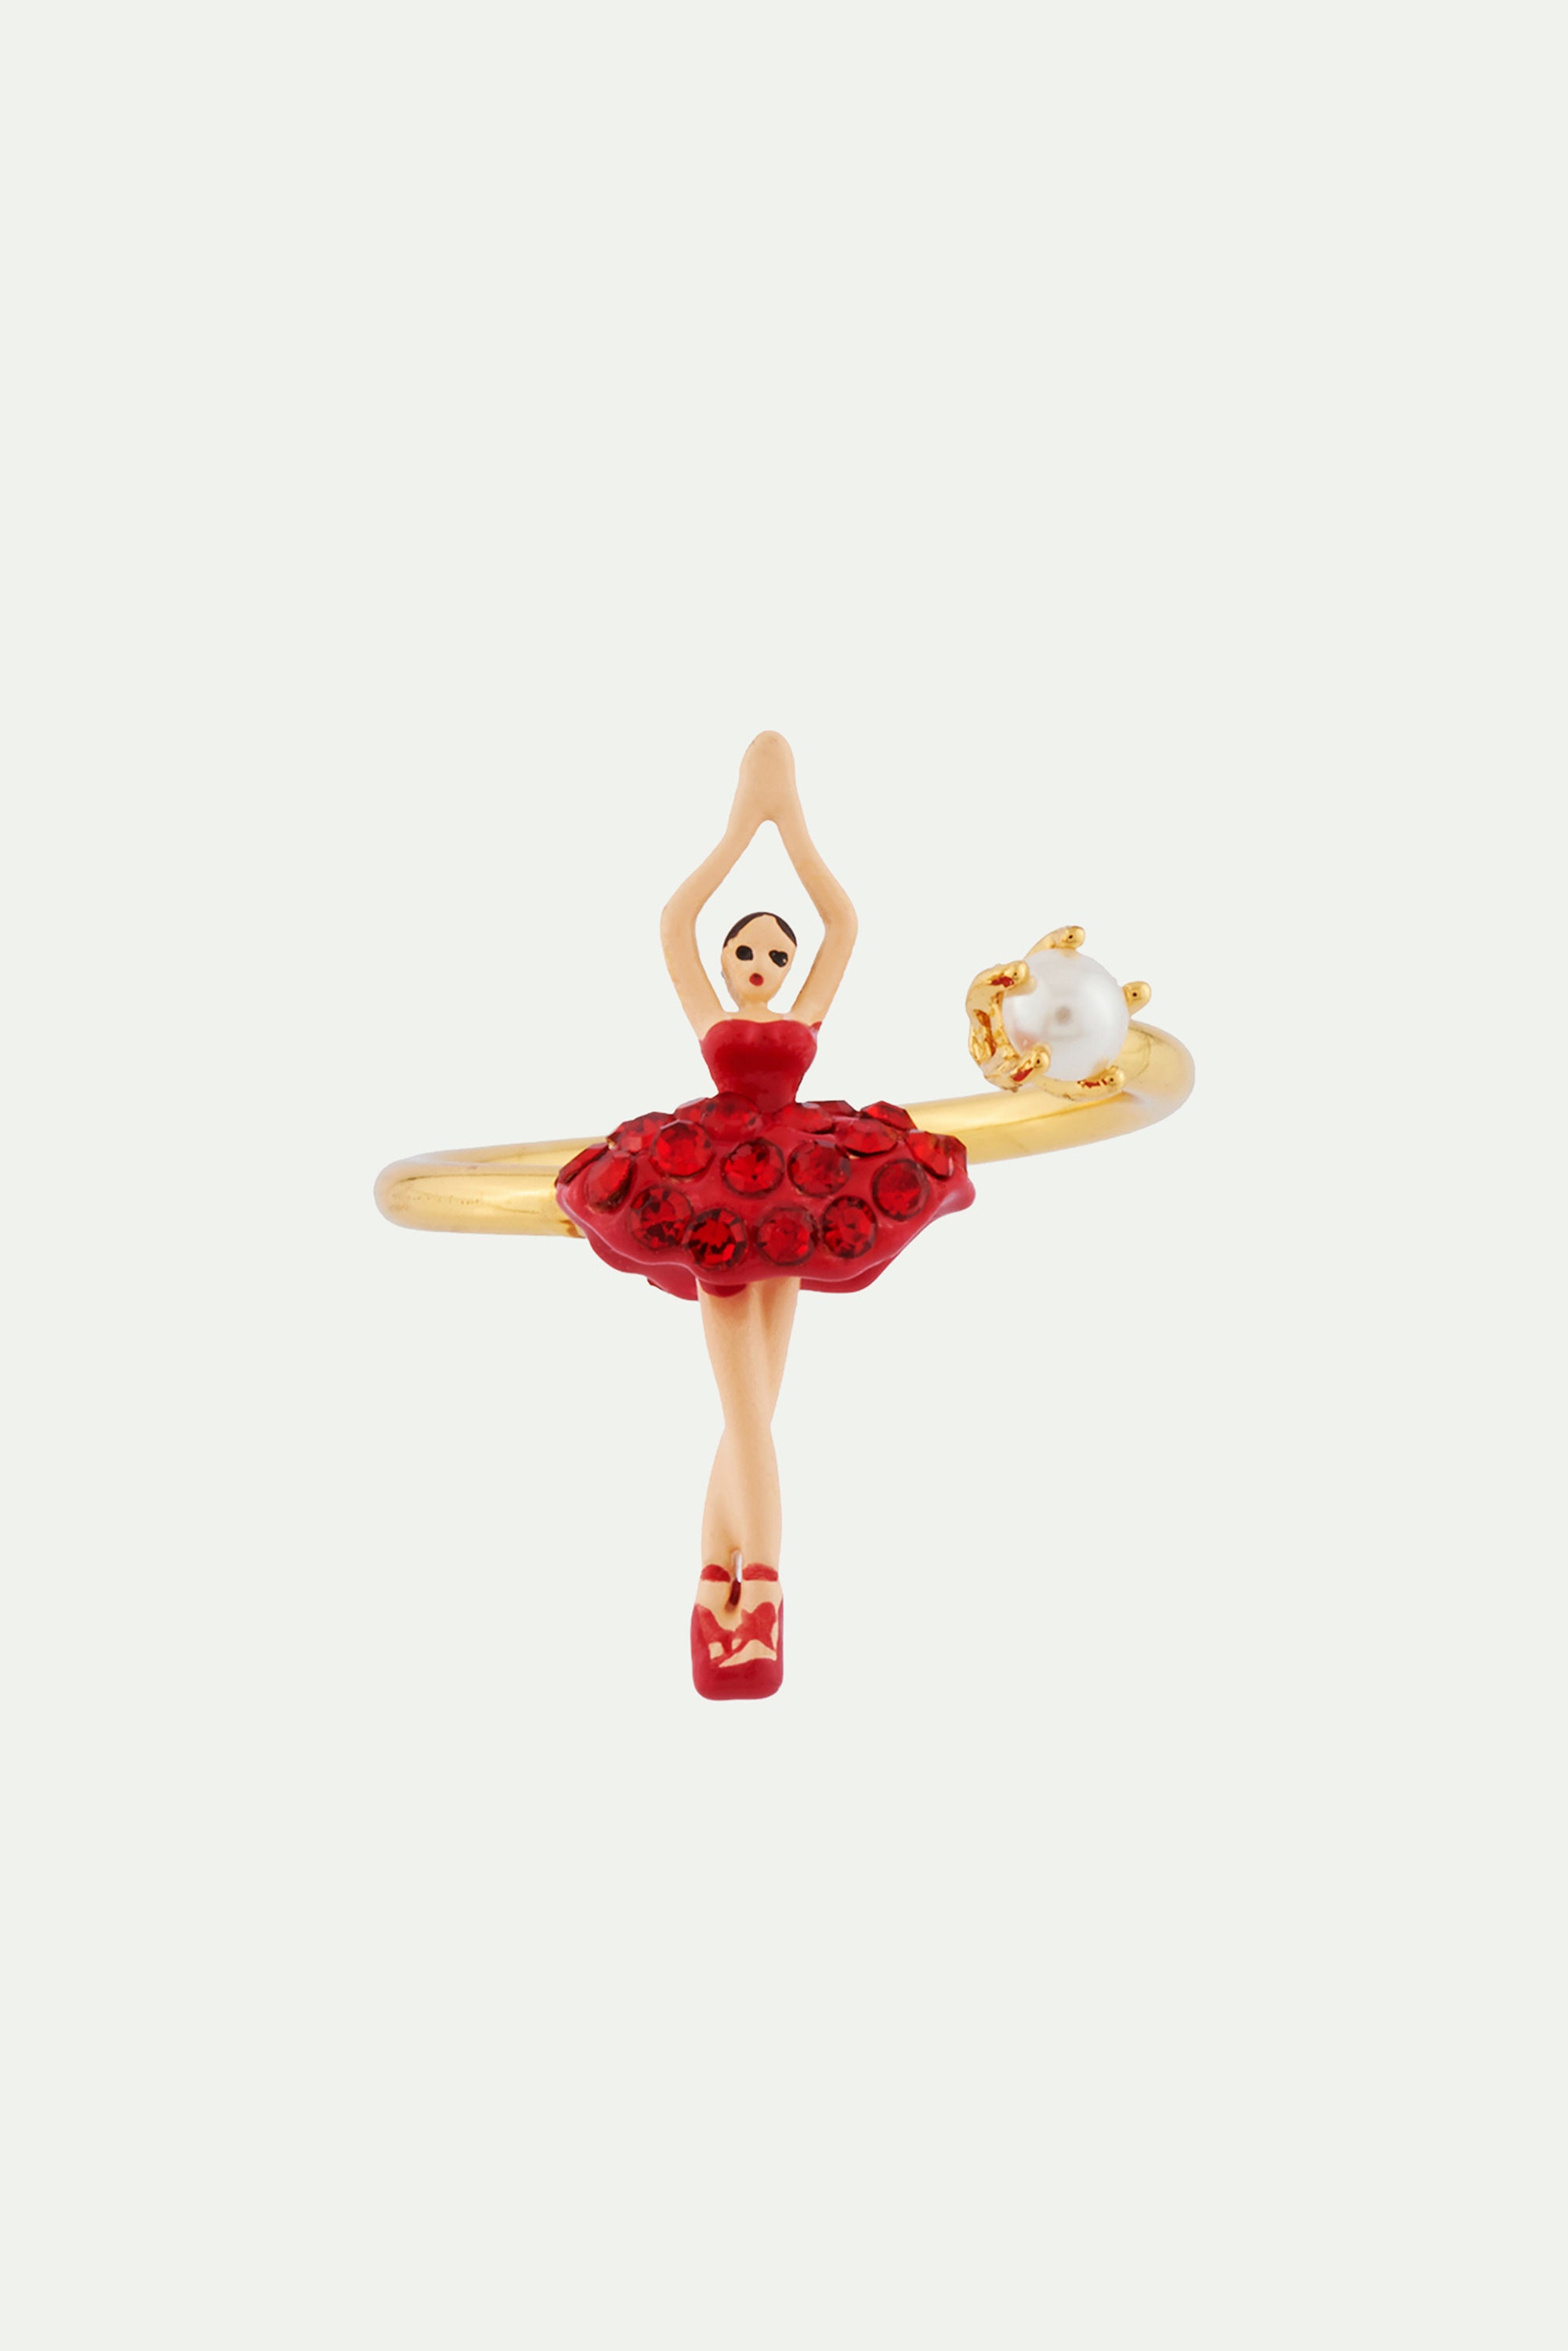 Anillo regulable mini bailarina con tutú pavimentado de strass rojos